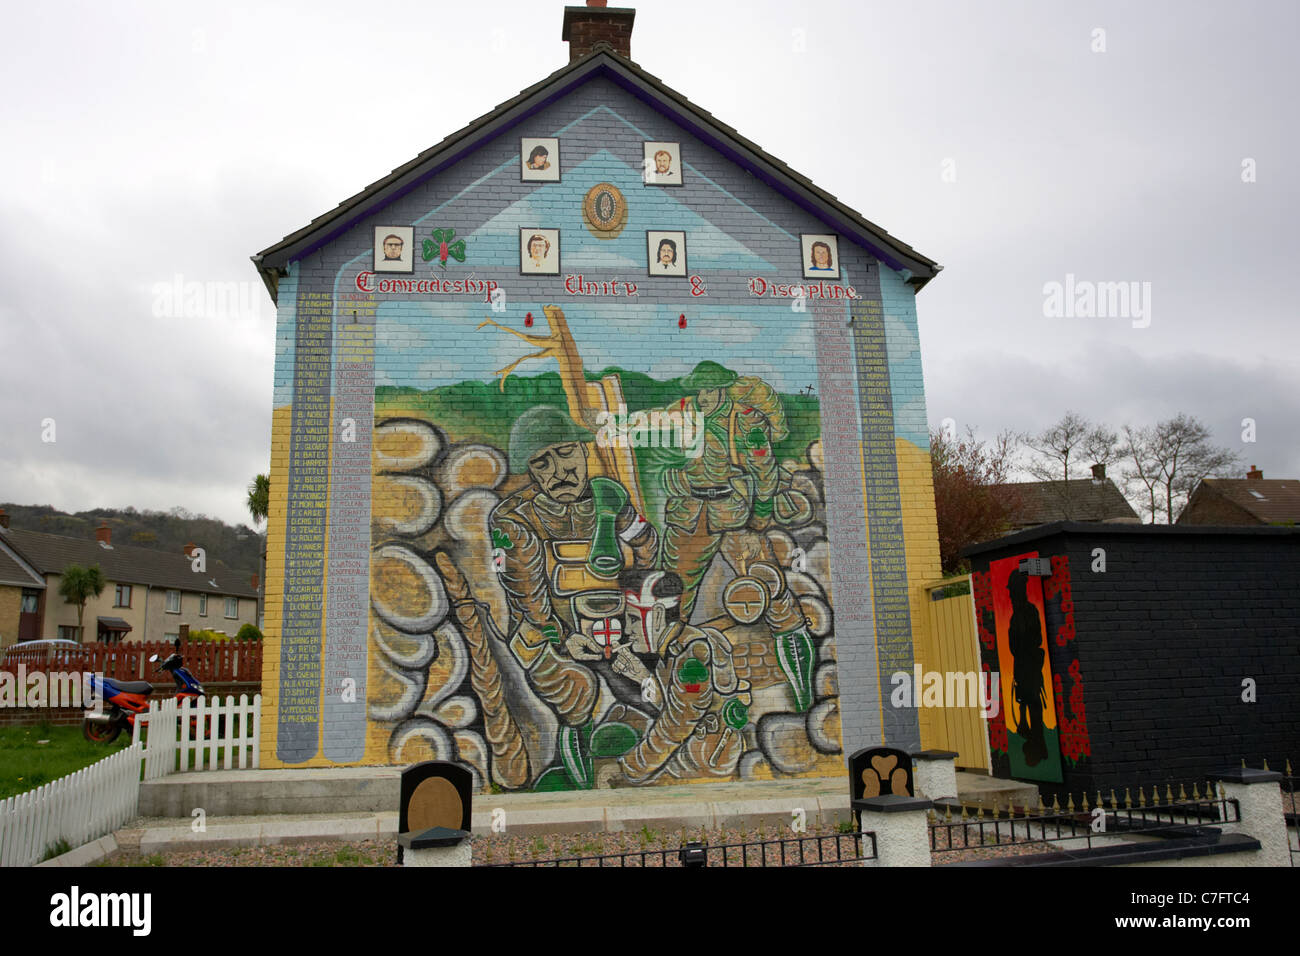 Uvf lealisti memorial parete murale pittura murale di rathcoole belfast Nord Irlanda del Nord Foto Stock